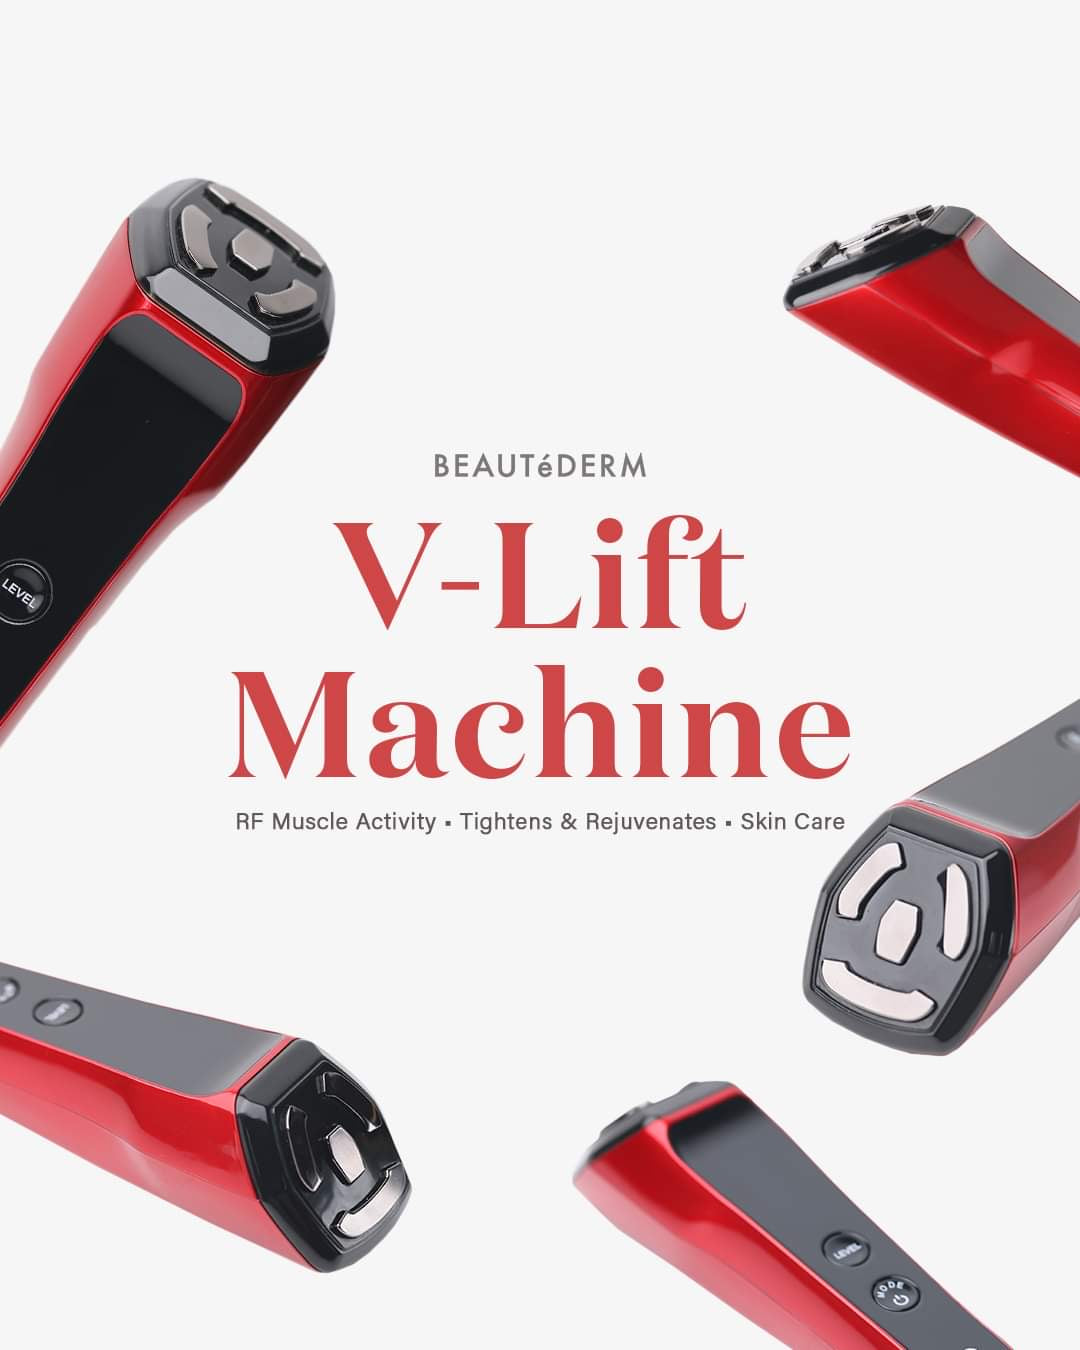 V-lift Machine